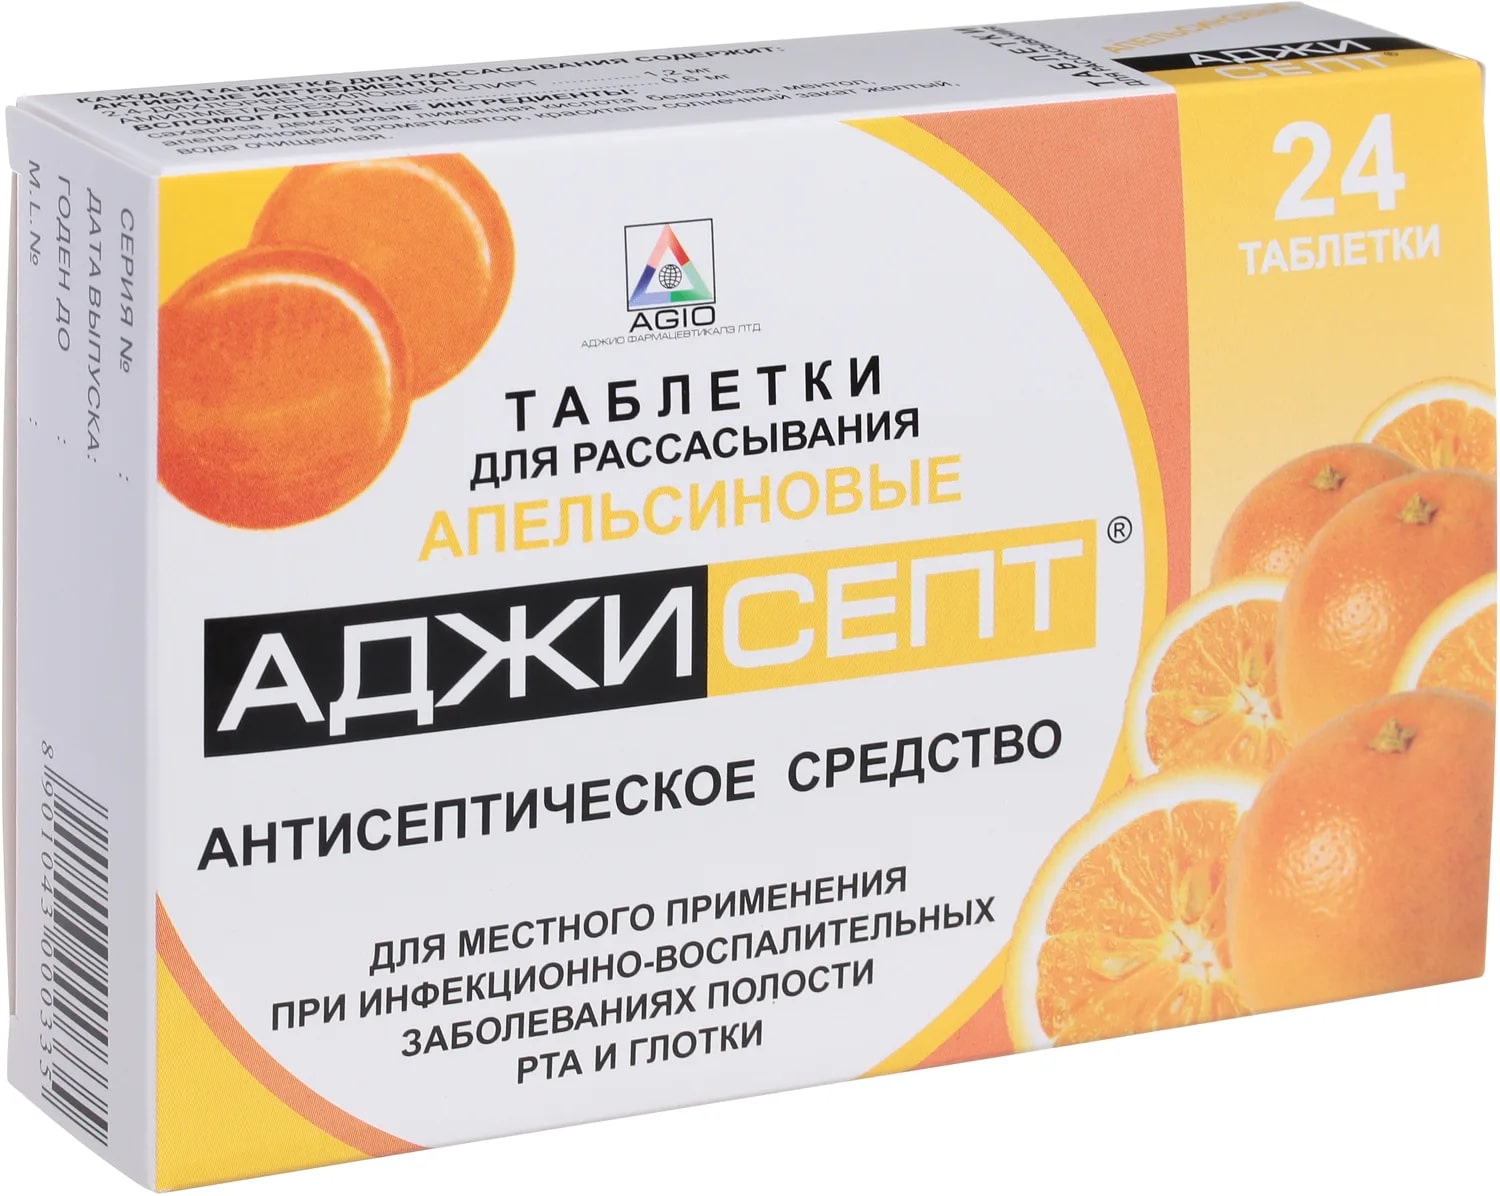 Аджисепт, таблетки для рассасывания (апельсин), 24 шт. аджисепт таблетки для рассасывания ментол эвкалипт 24 шт